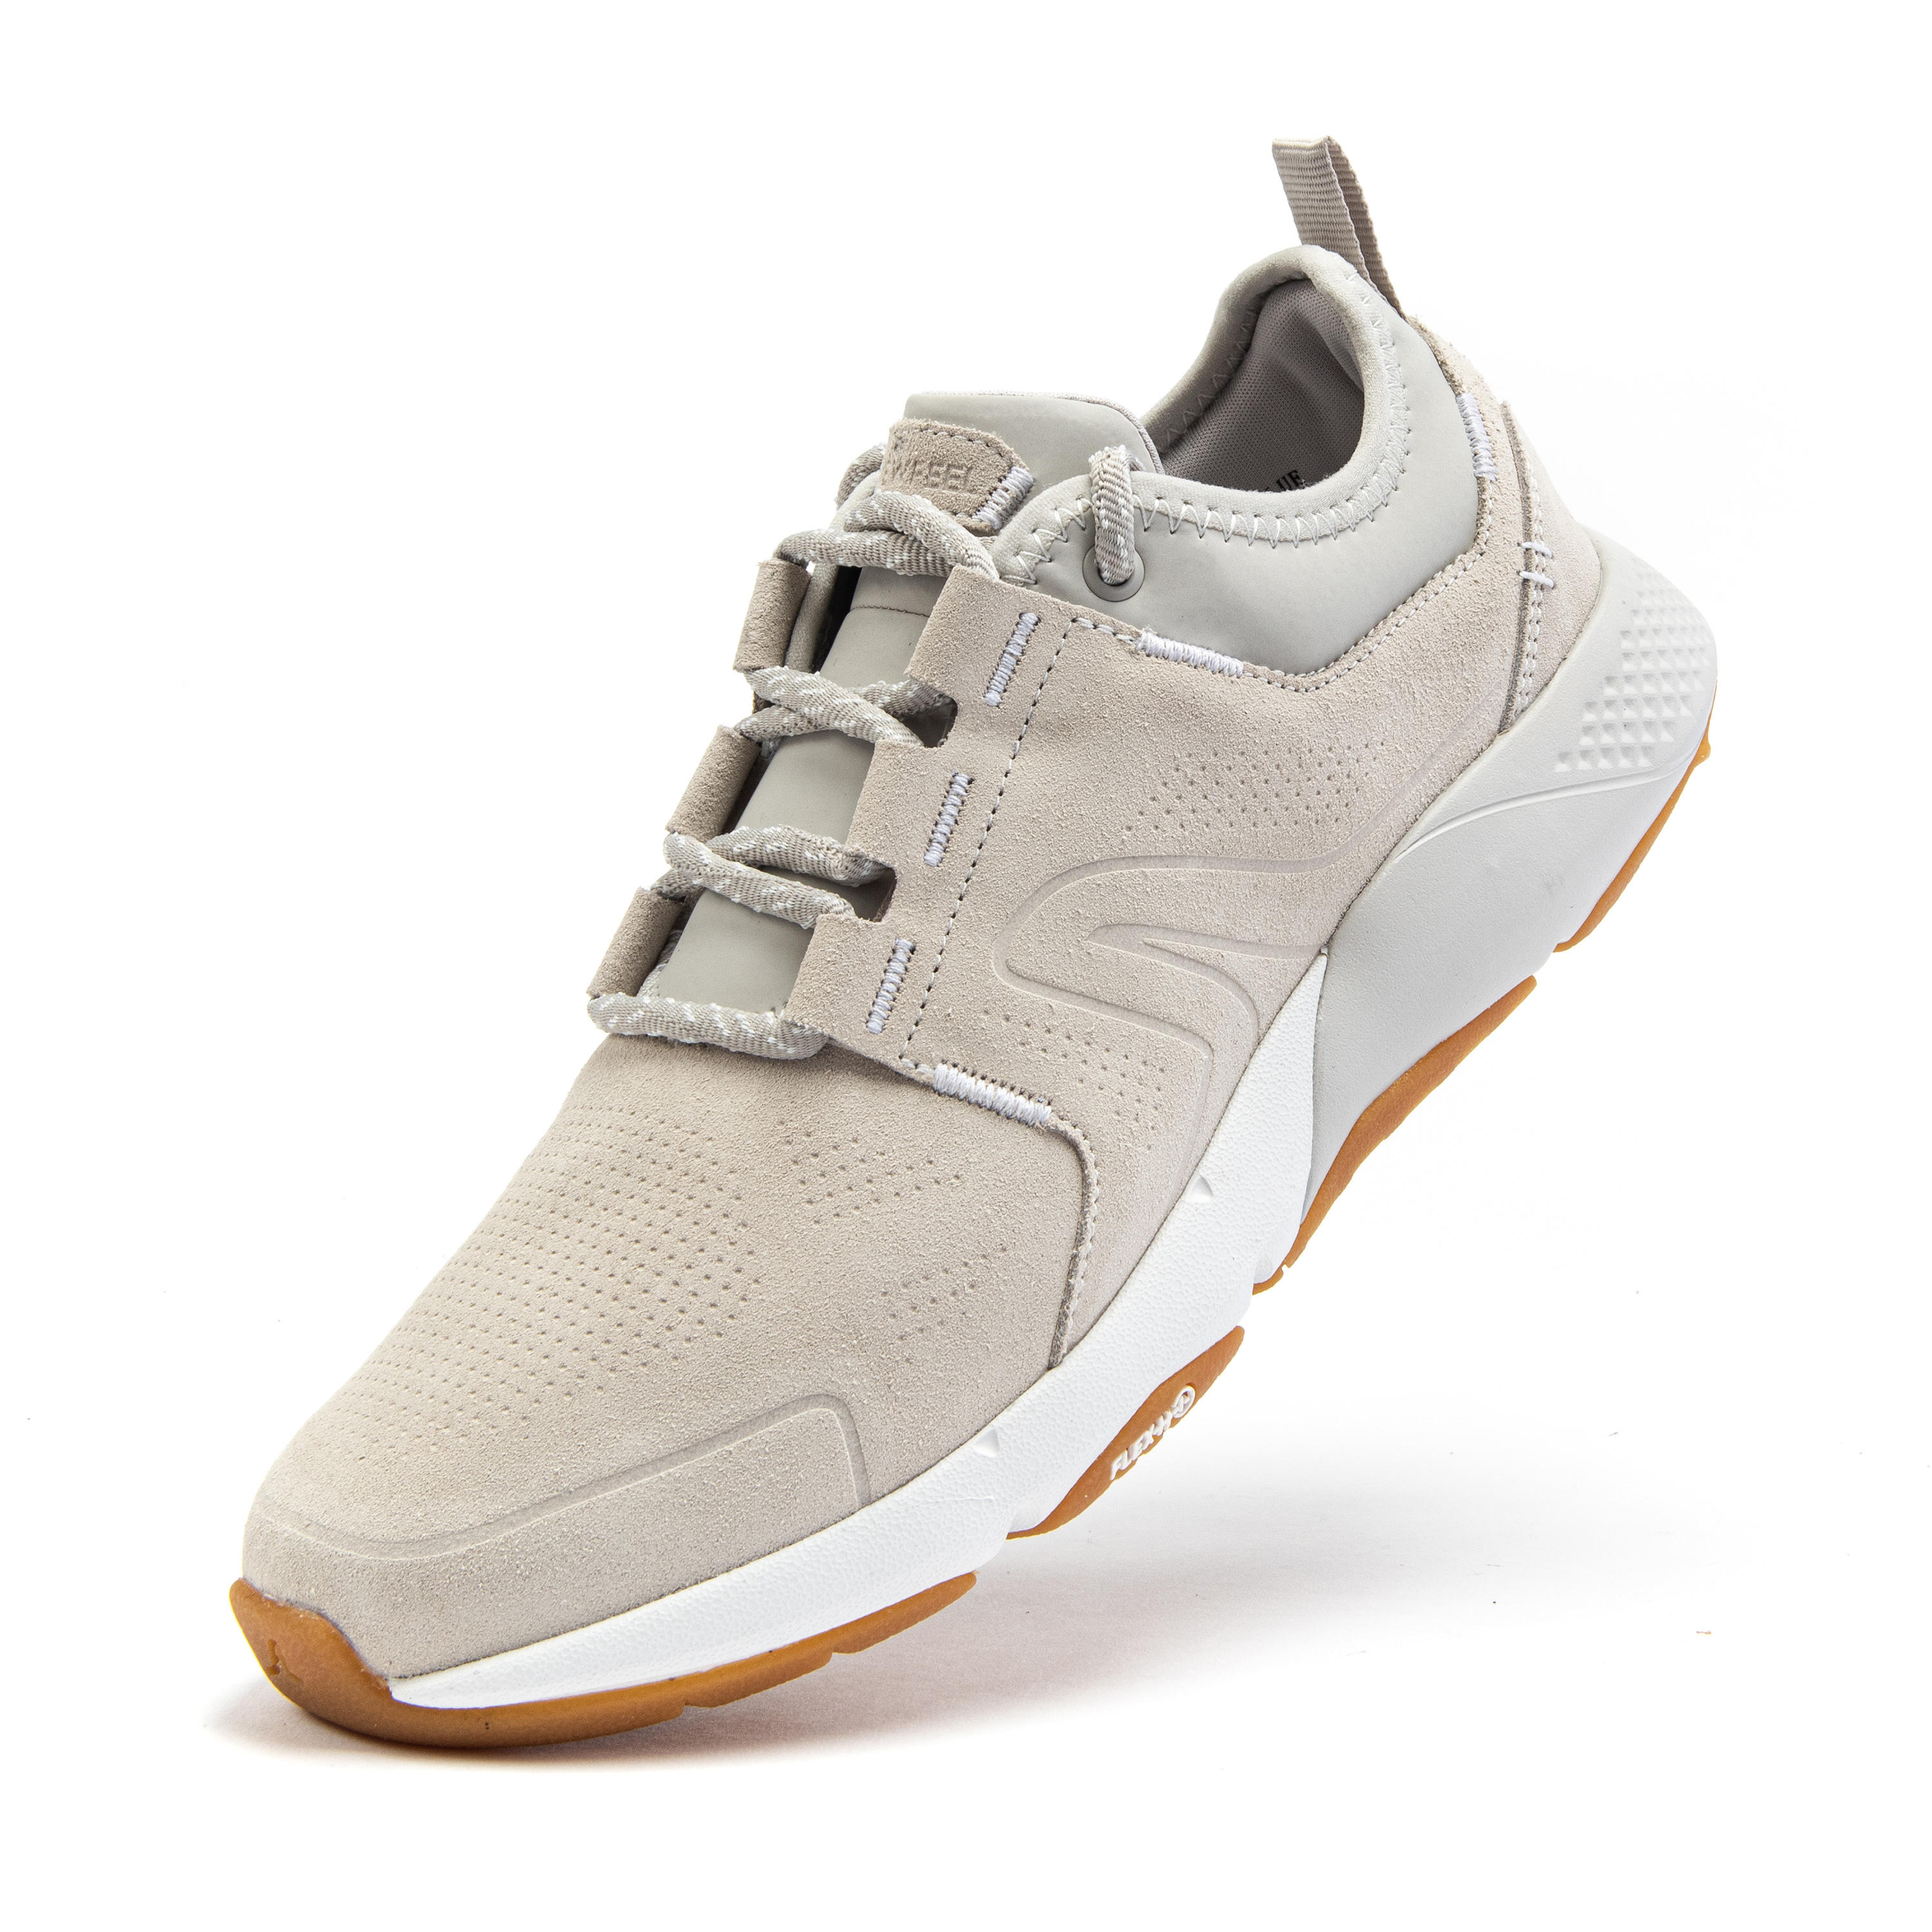 Women's City Walking Shoes Actiwalk Comfort Leather - beige 18/35